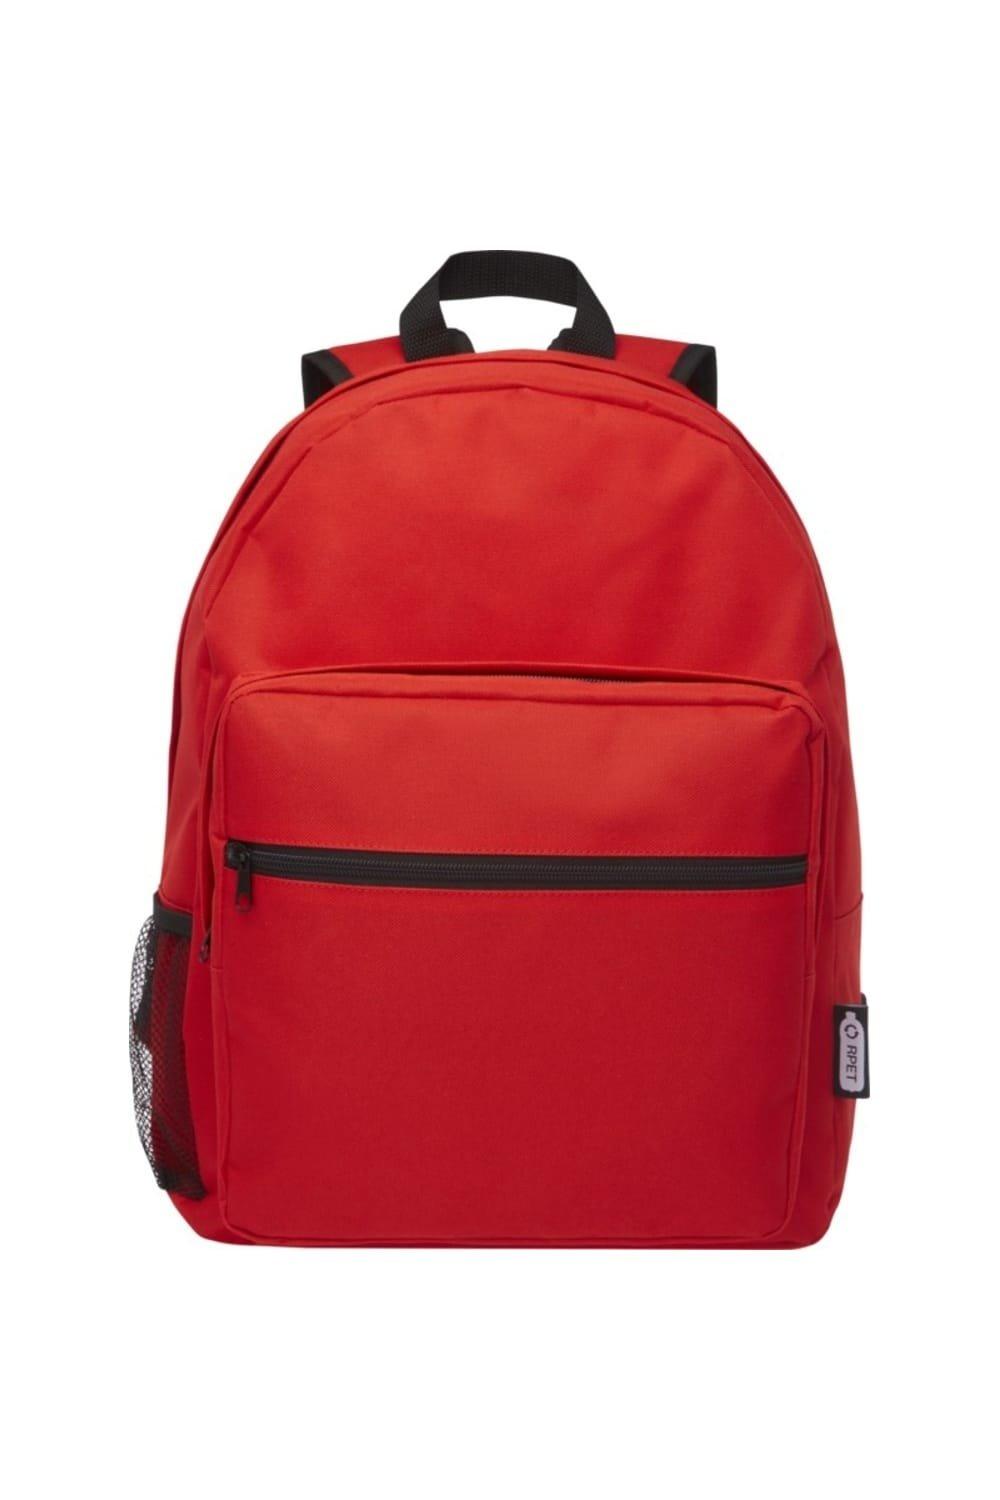 Рюкзак Retrend из переработанного сырья Bullet, красный изолированная сумка на шнурке adventure из переработанного сырья bullet красный